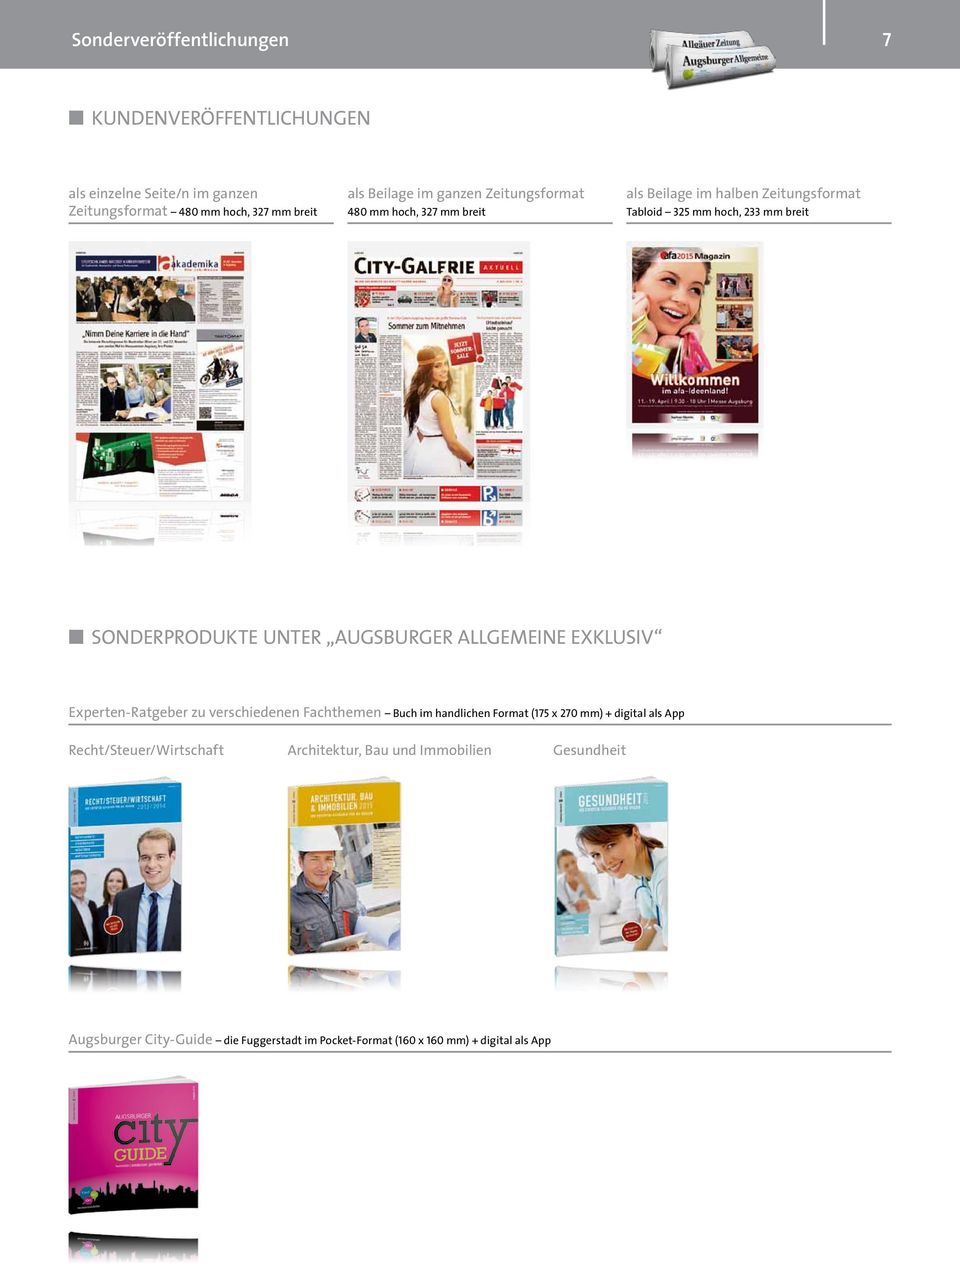 Augsburger AllgemeiNE Exklusiv Experten-Ratgeber zu verschiedenen Fachthemen Buch im handlichen Format (175 x 270 mm) + digital als App